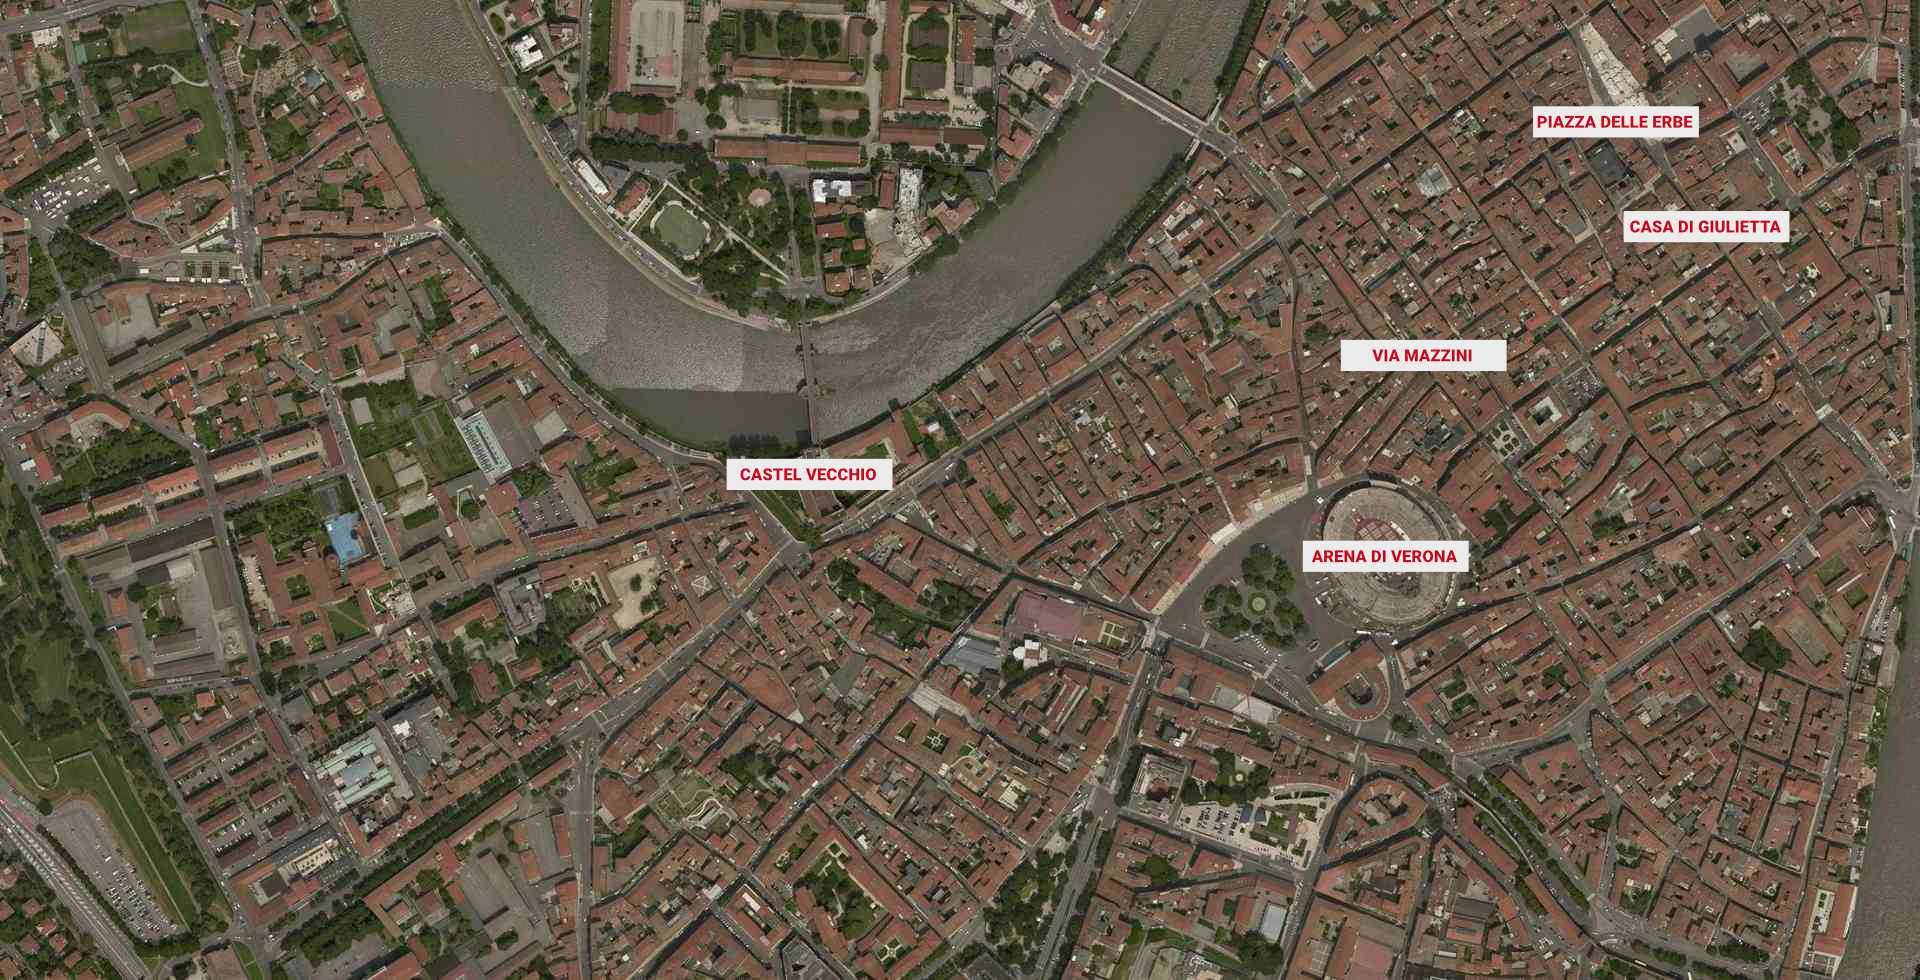 Mappa città di Verona con indicazione posizione appartamenti PAT